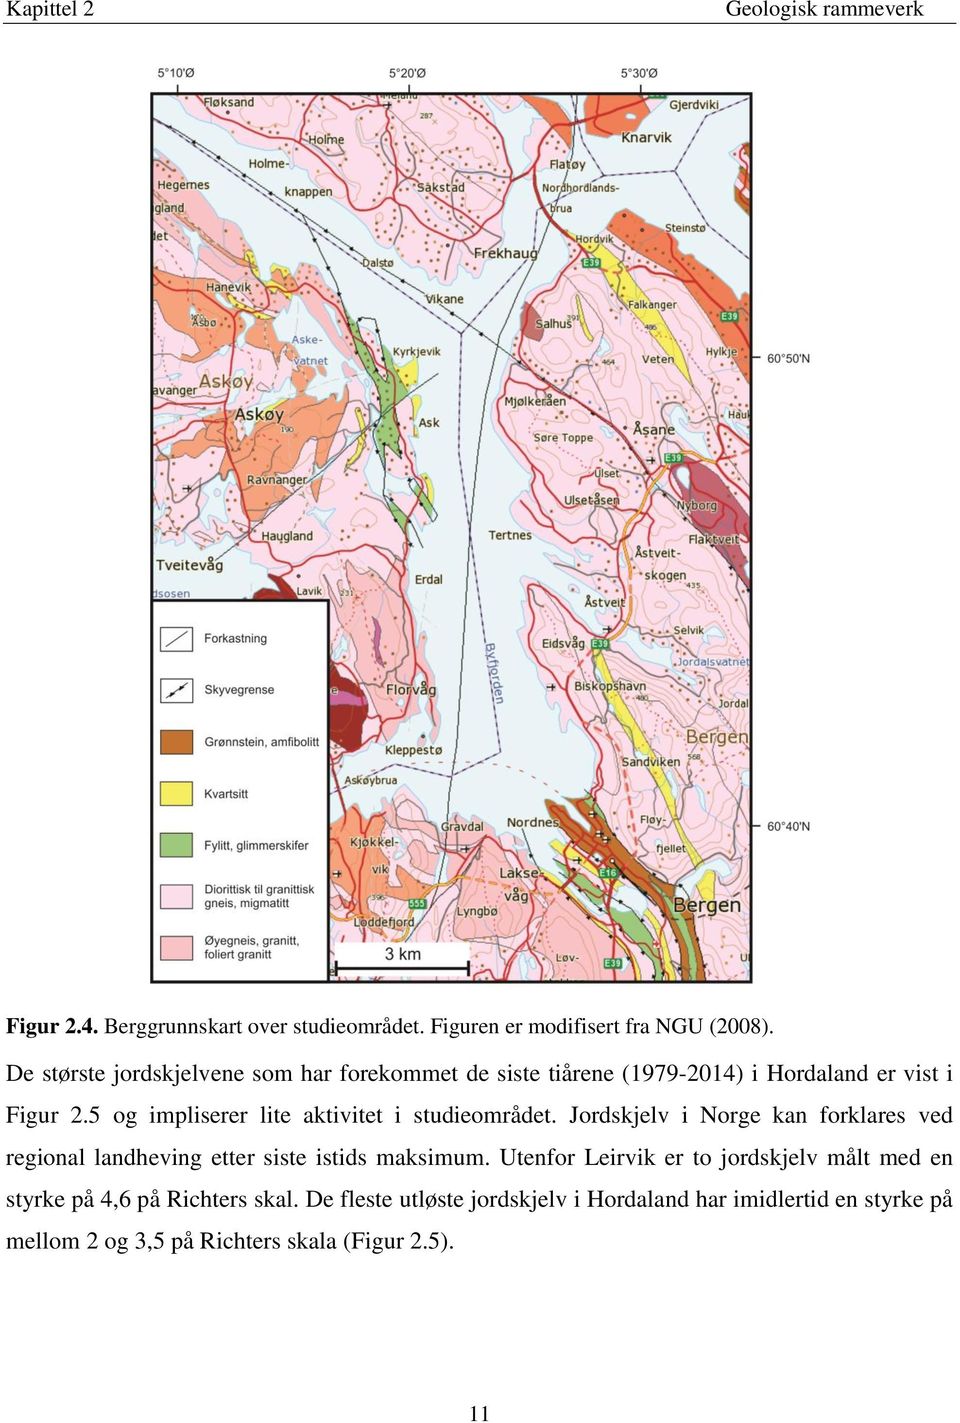 5 og impliserer lite aktivitet i studieområdet. Jordskjelv i Norge kan forklares ved regional landheving etter siste istids maksimum.